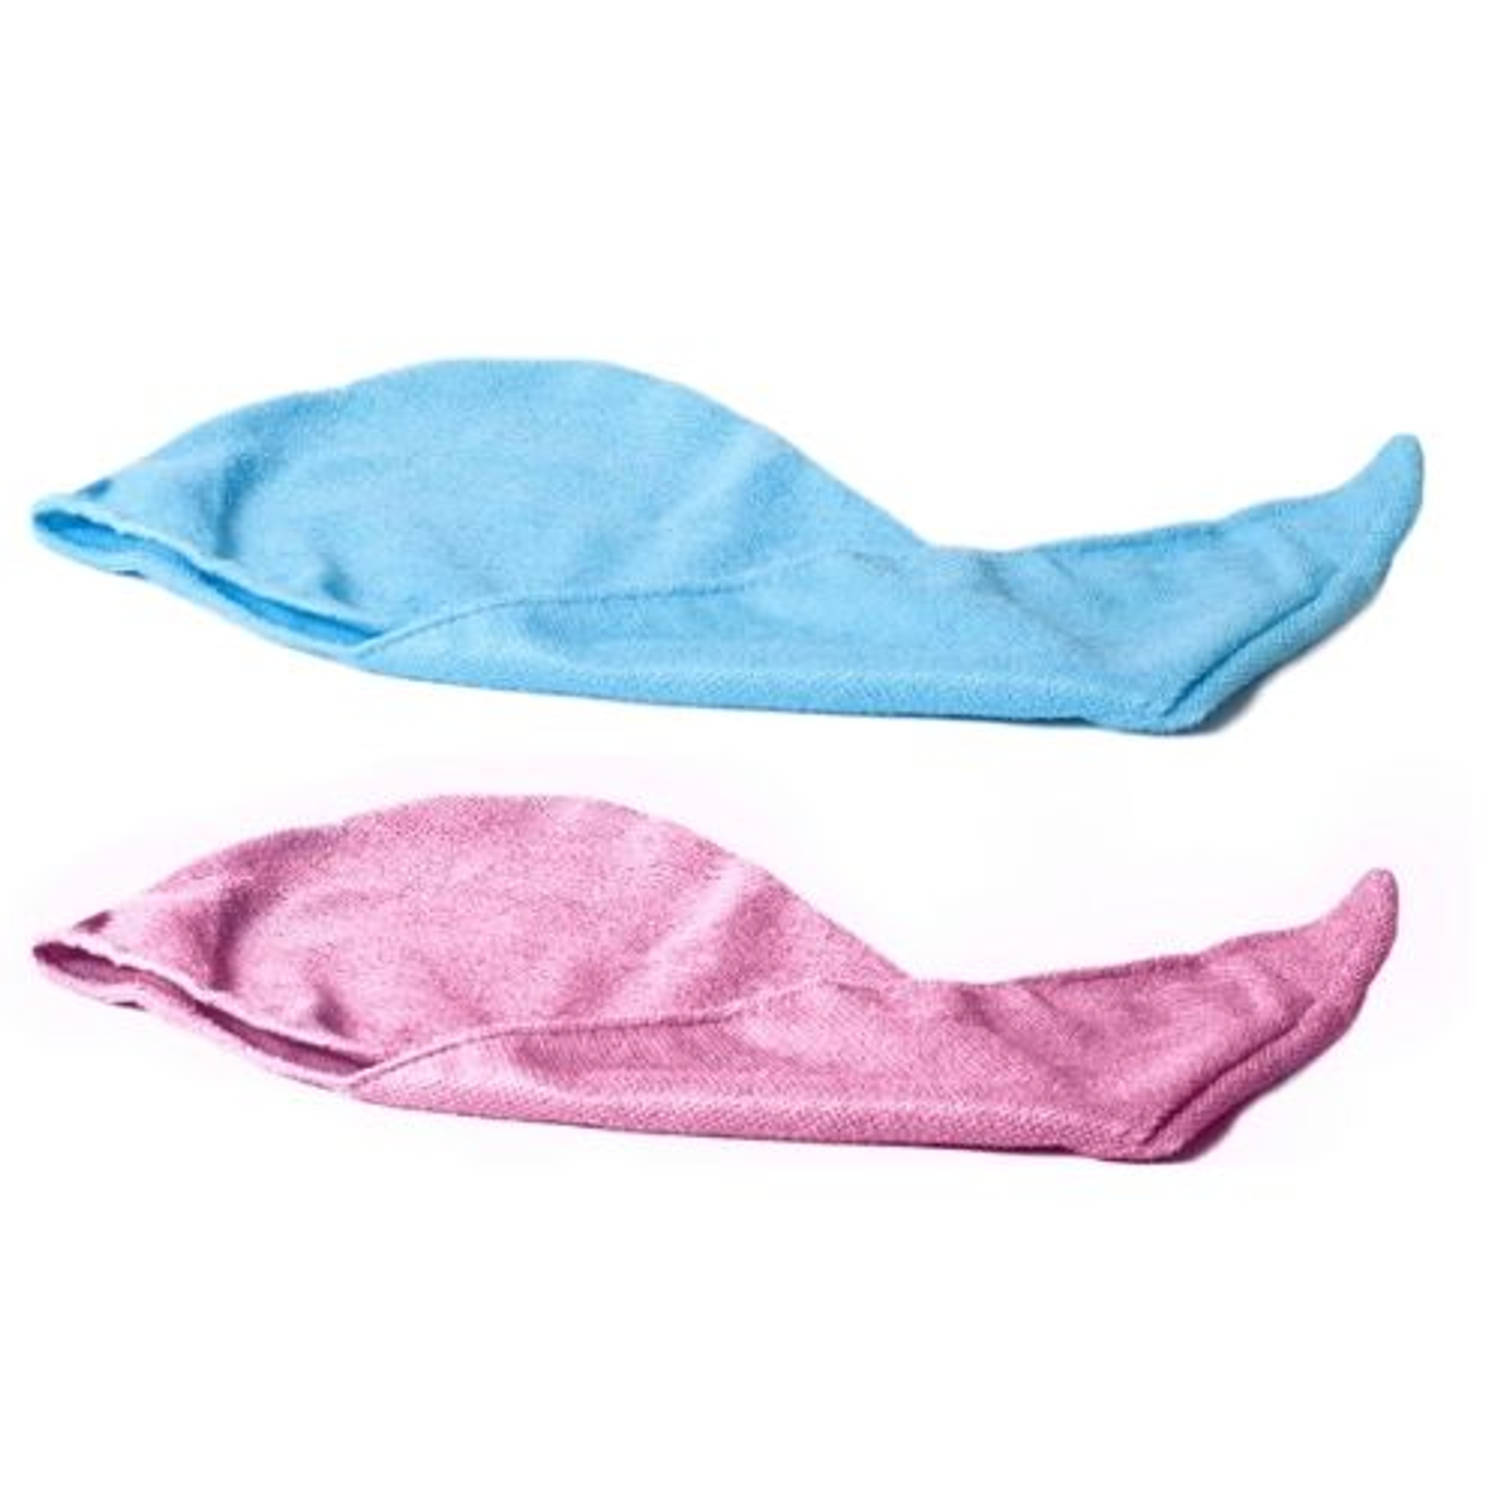 Groenten Persoonlijk isolatie Orange85 Haarhanddoek - Roze en Blauw - Twee stuks - Haar handdoek -  Handoek voor haar | Blokker